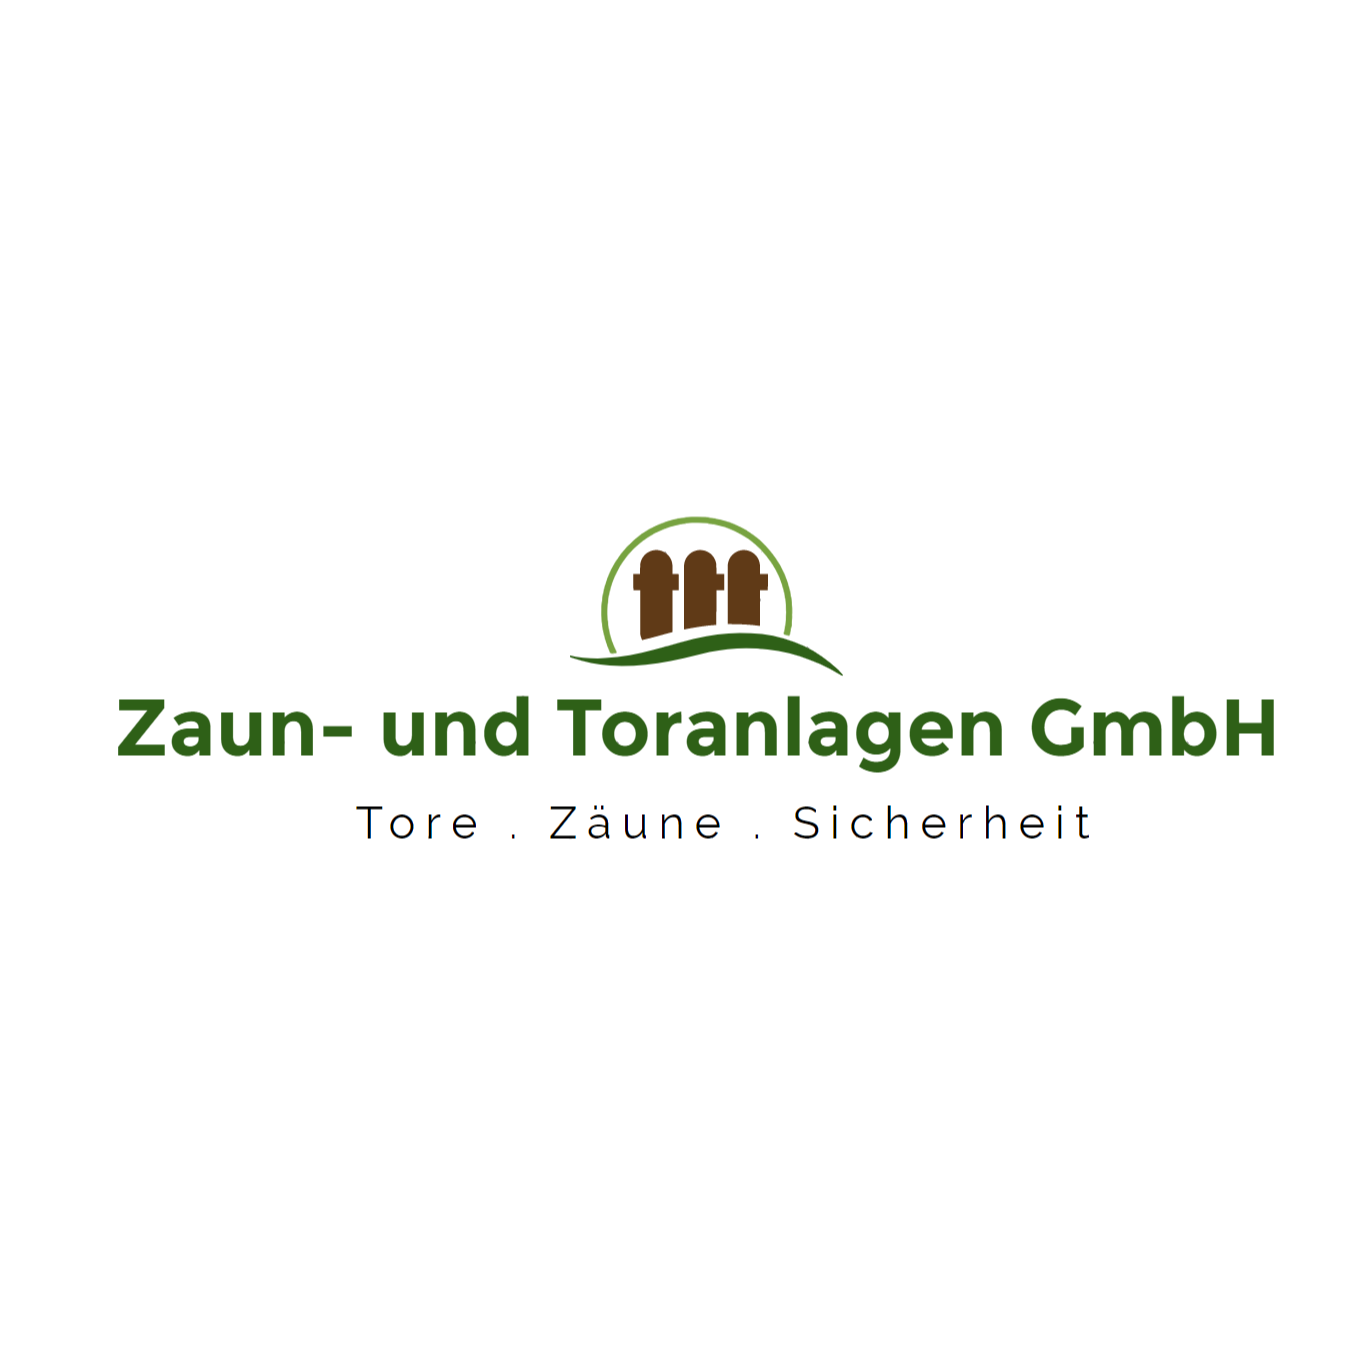 Zaun- & Toranlagen GmbH "Klaus Störtebeker" Herr Tassilo Beiß in Ralswiek - Logo